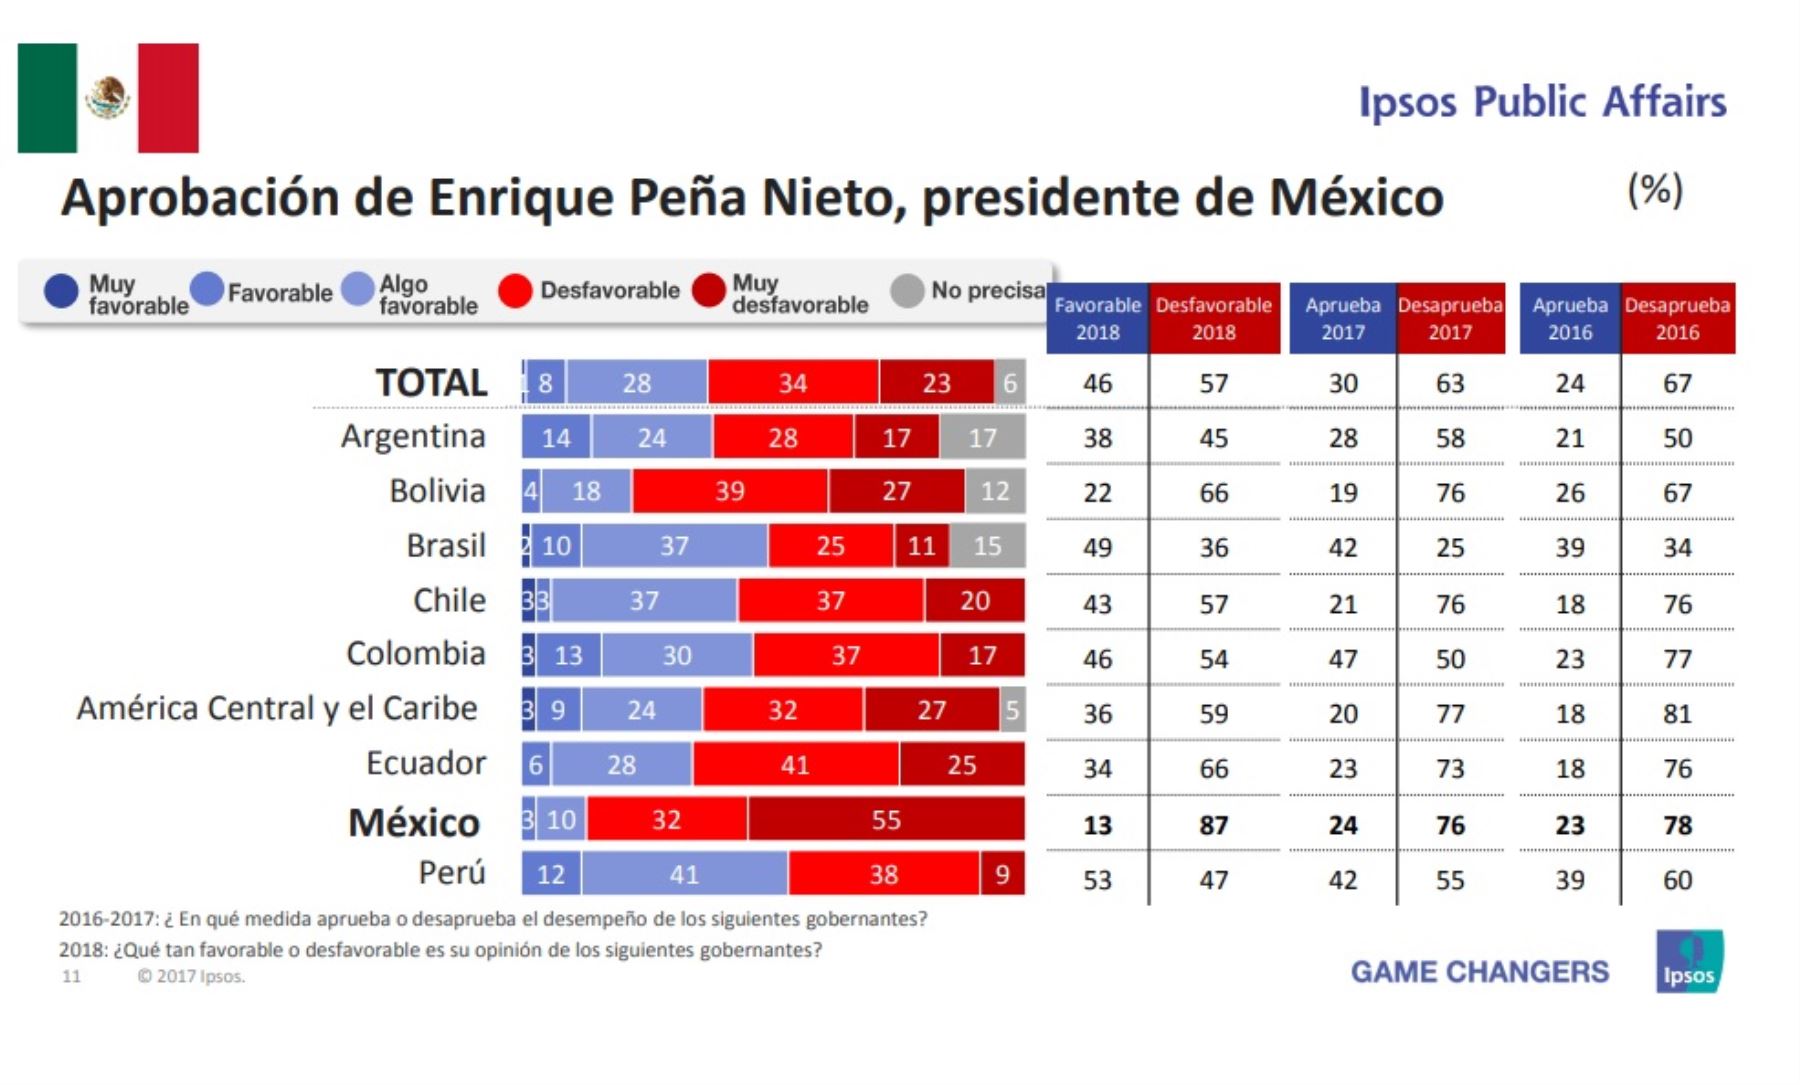 Aprobación del presidente de México, Enrique Peña Nieto. Encuesta Ipsos Public Affairs 2018.